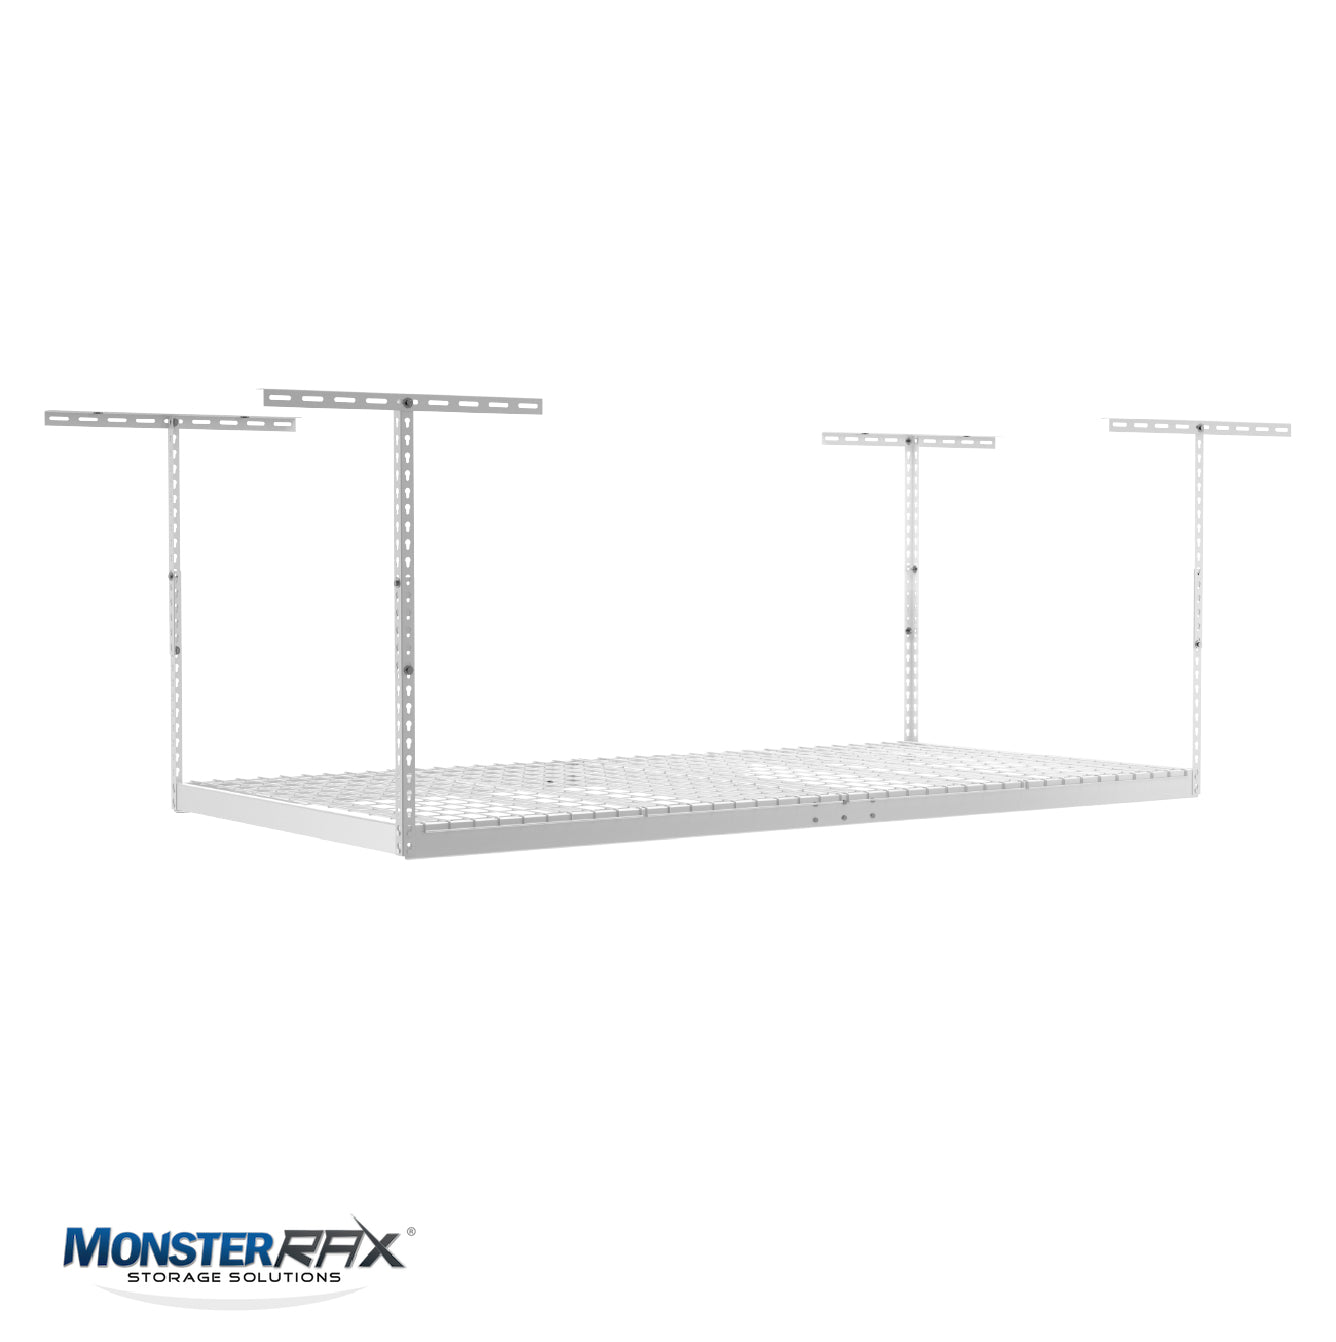 MonsterRax Bin Rack Combo - Includes 5 Storage Bins